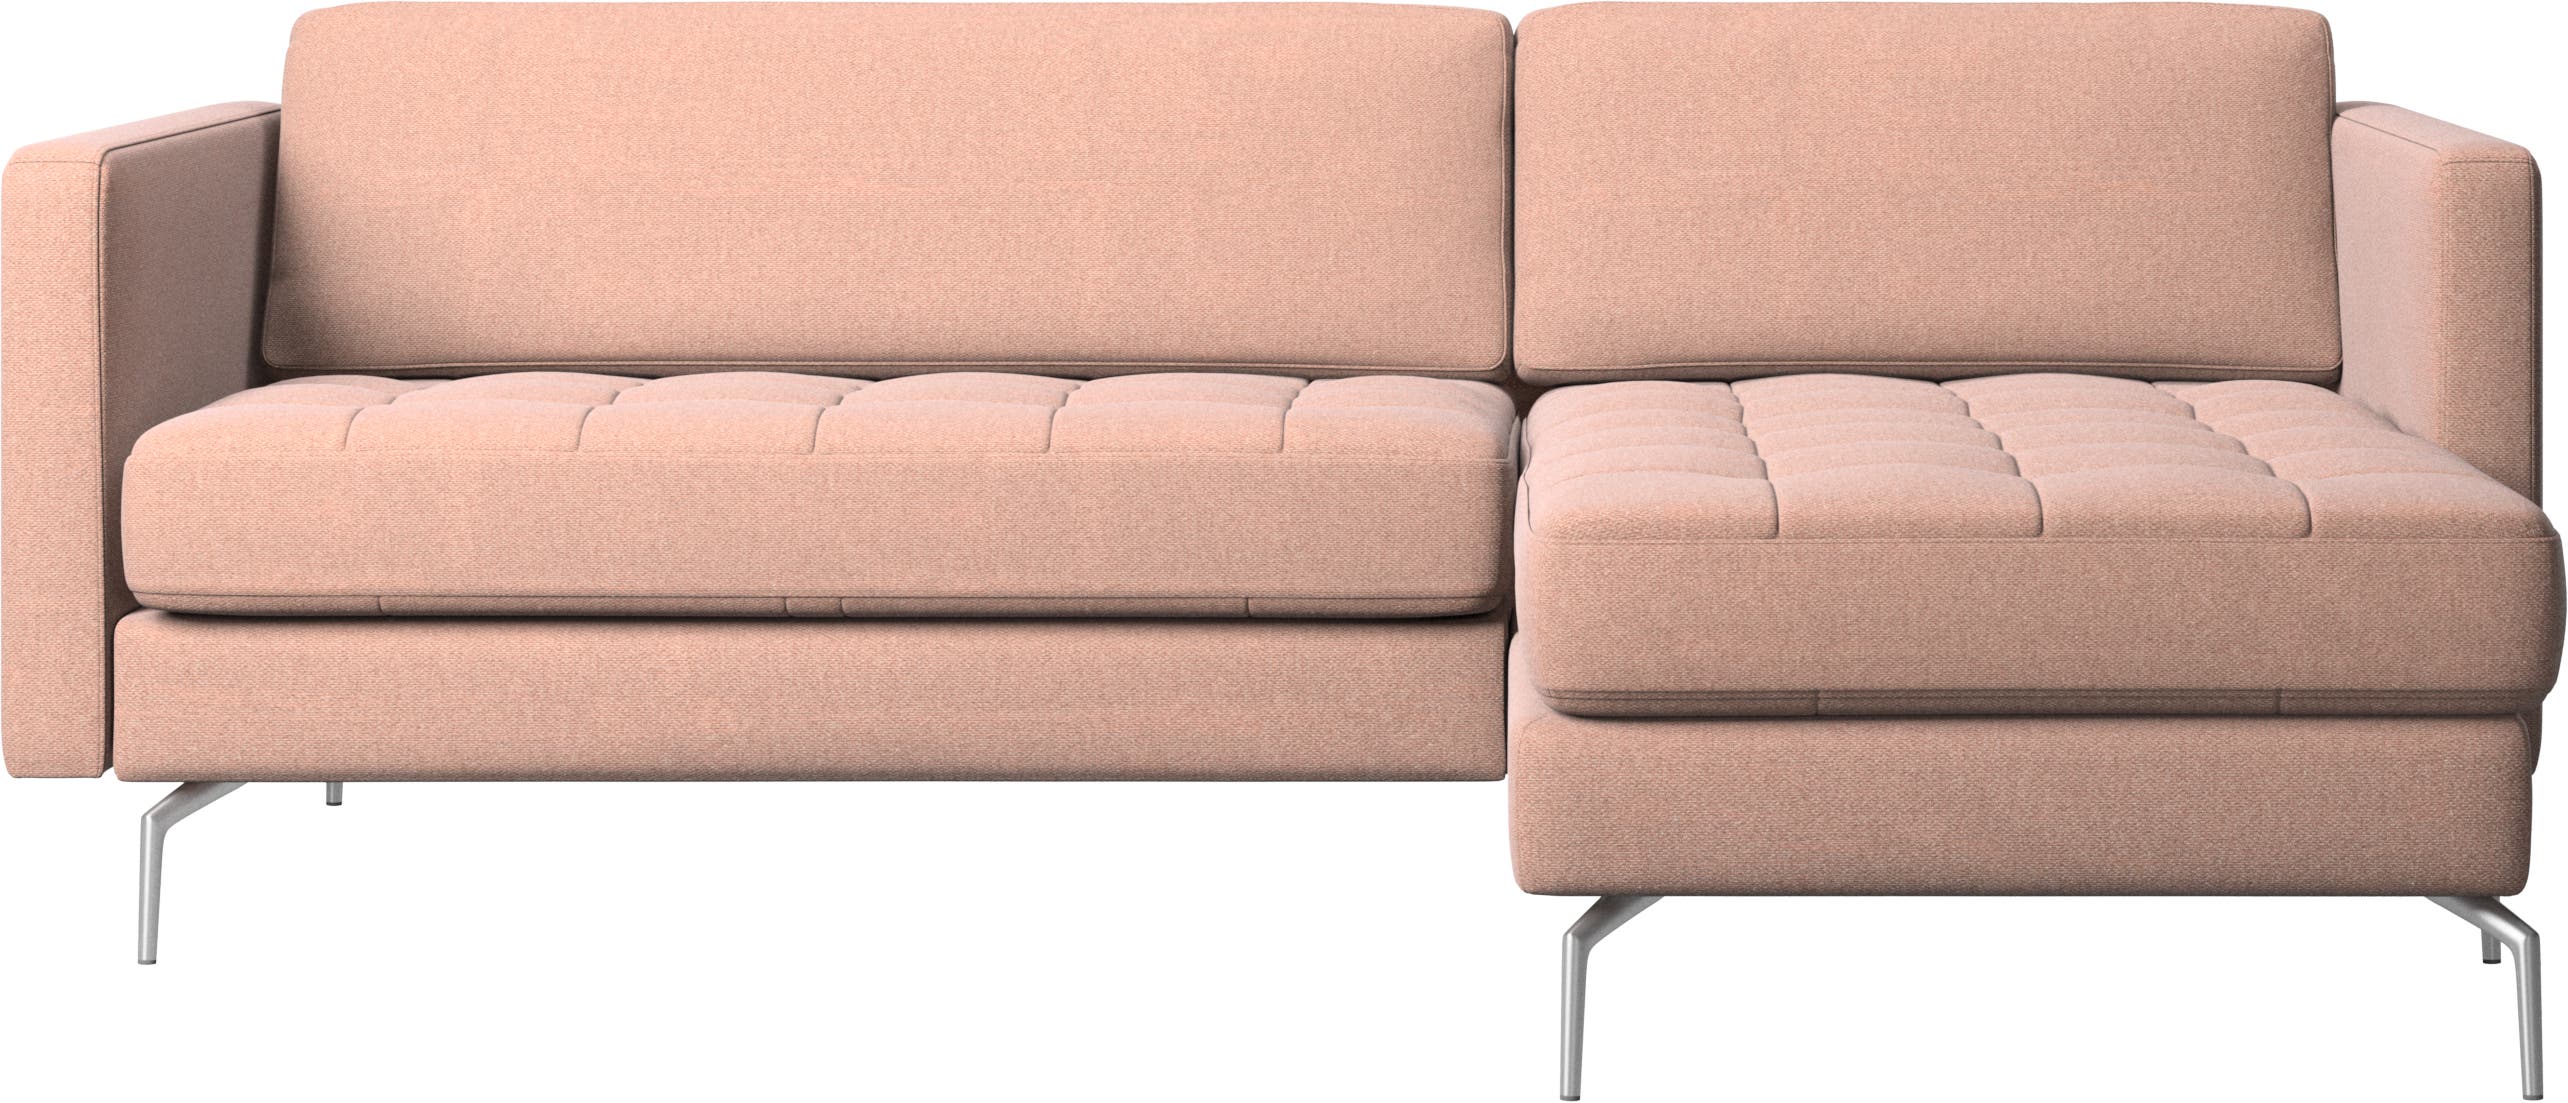 Sofa Osaka z szezlongiem, pikowane siedzisko